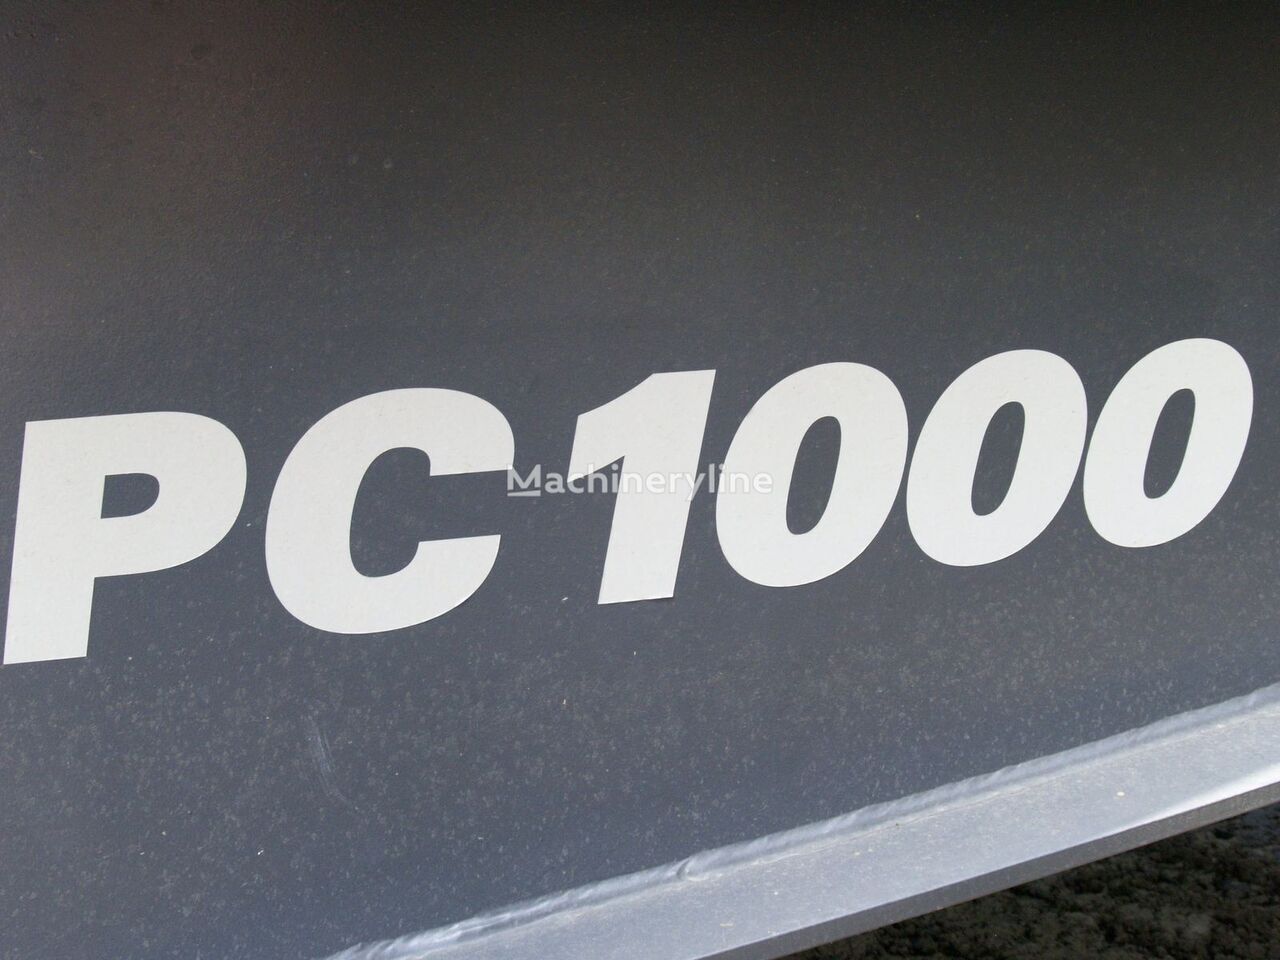 جديد كسارة مخرو Atlas Copco PC 1000: صور 20